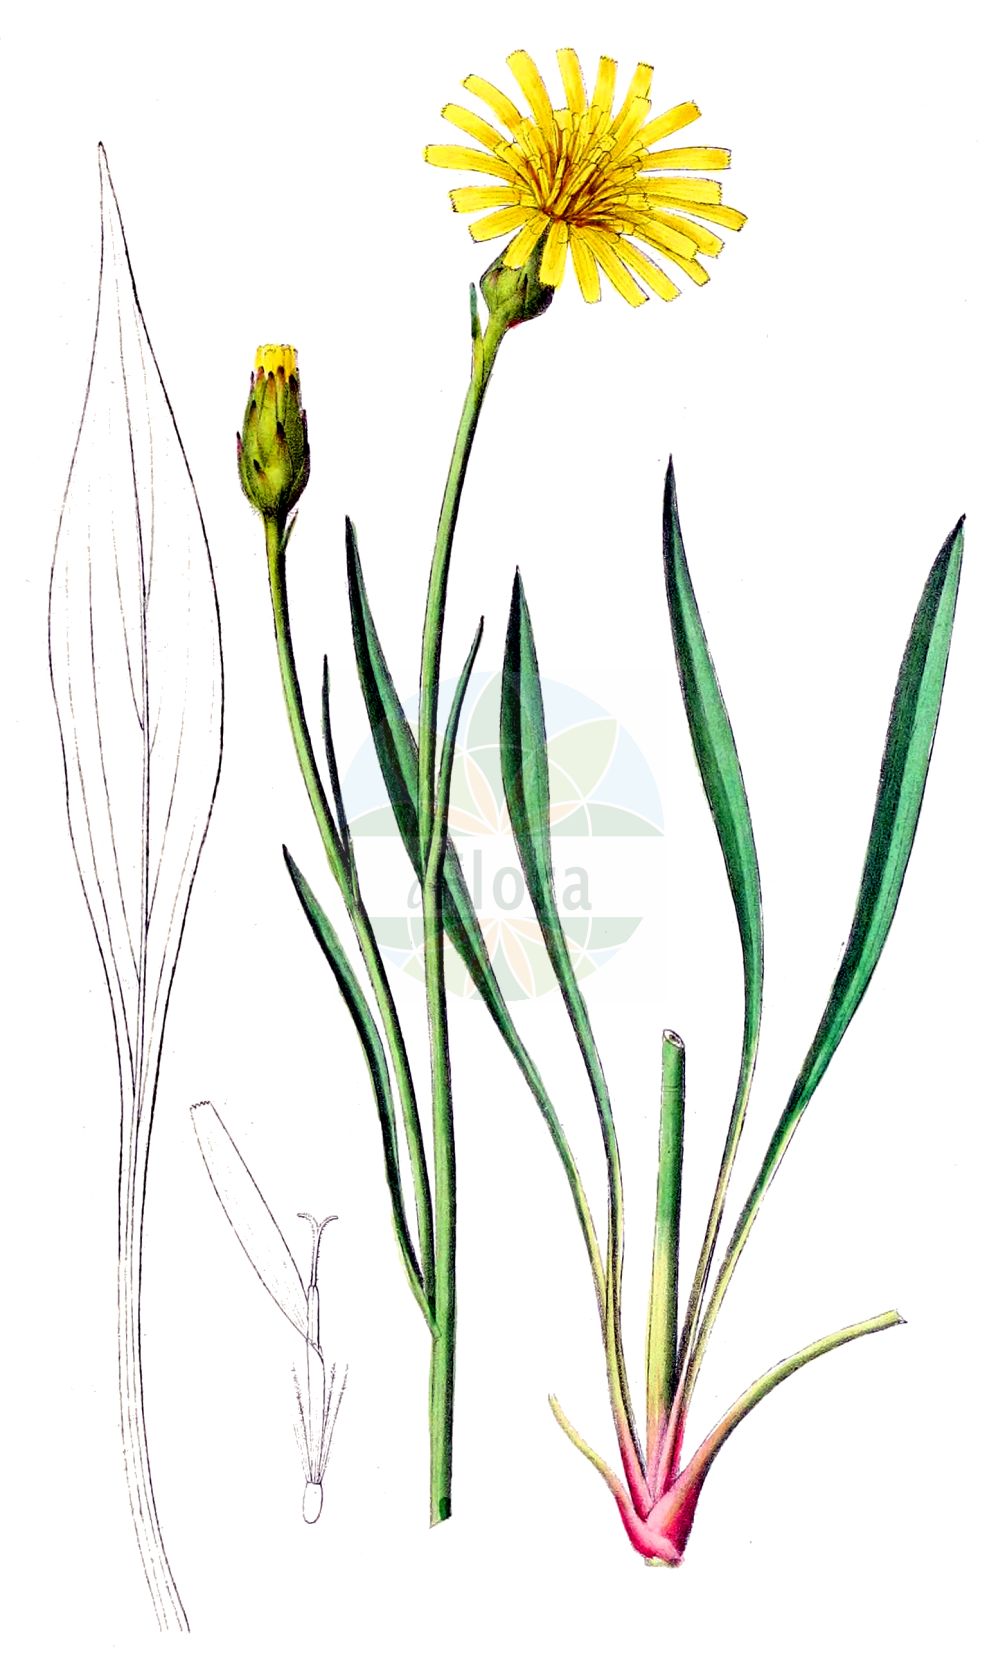 Historische Abbildung von Scorzonera humilis (Niedrige Schwarzwurzel - Viper's-grass). Das Bild zeigt Blatt, Bluete, Frucht und Same. ---- Historical Drawing of Scorzonera humilis (Niedrige Schwarzwurzel - Viper's-grass). The image is showing leaf, flower, fruit and seed.(Scorzonera humilis,Niedrige Schwarzwurzel,Viper's-grass,Scorzonera candollei,Scorzonera clusii,Scorzonera humilis,Scorzonera plantaginea,Scorzonera tenuifolia,Niedrige Schwarzwurzel,Viper's-grass,Dwarf Vipergrass,Dwarf Viper's-grass,Scorzonera,Schwarzwurzel,Scorzonera,Asteraceae,Korbblütengewächse,Daisy family,Blatt,Bluete,Frucht,Same,leaf,flower,fruit,seed,Dietrich (1833-1844))